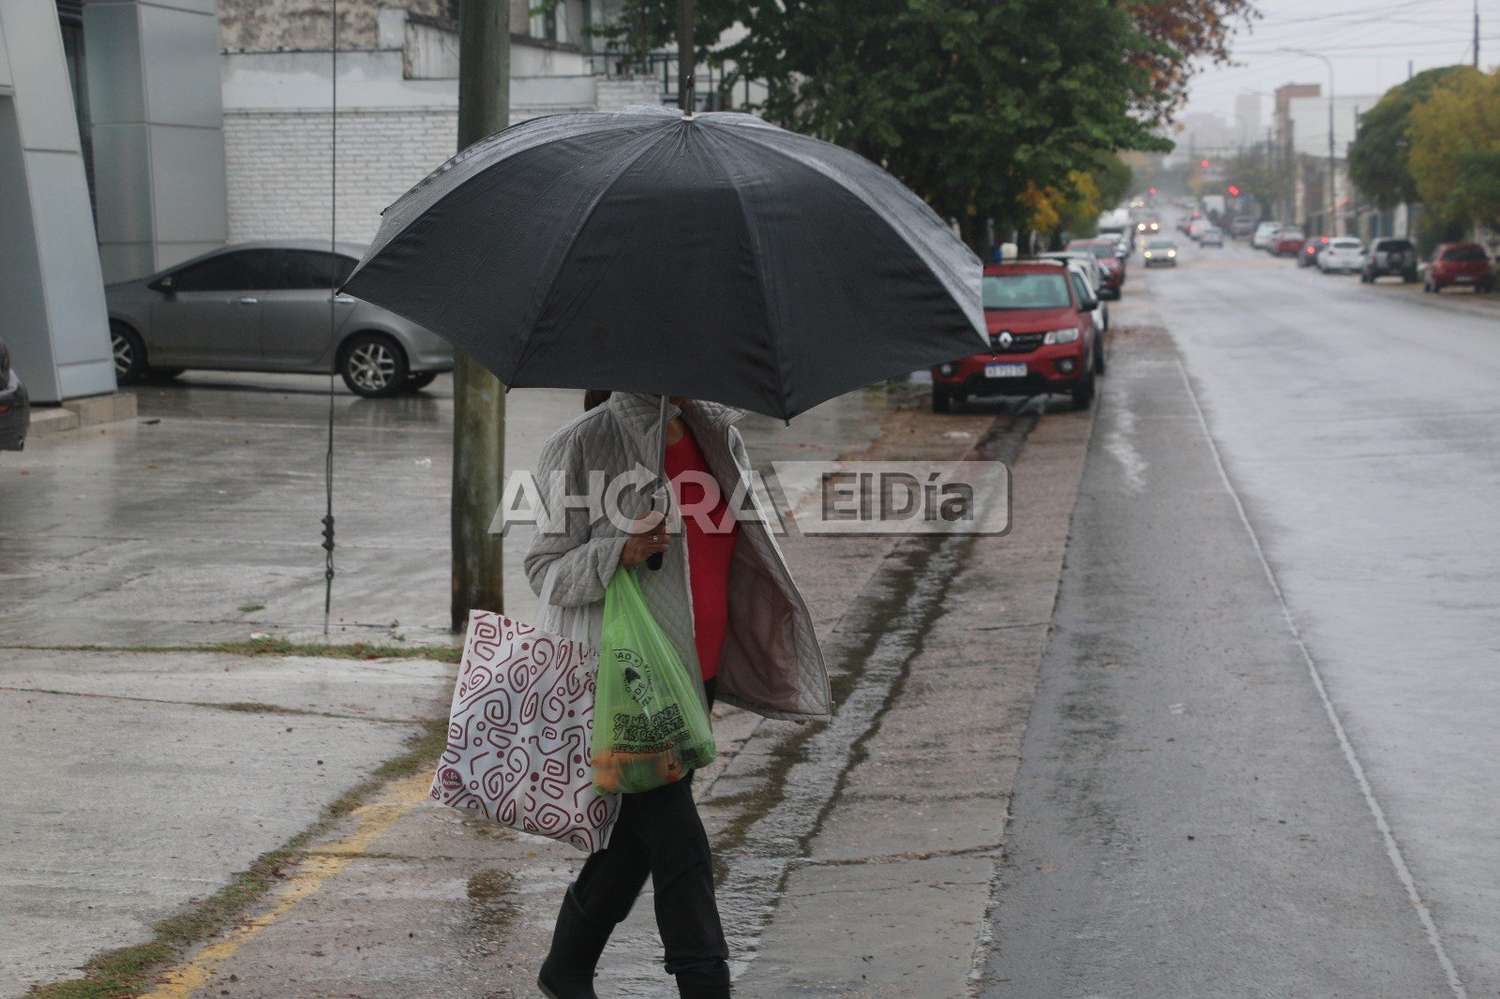 Lluvias en gran parte de Entre Ríos y hay alertas por tormentas: ¿Cómo sigue en Gualeguaychú?